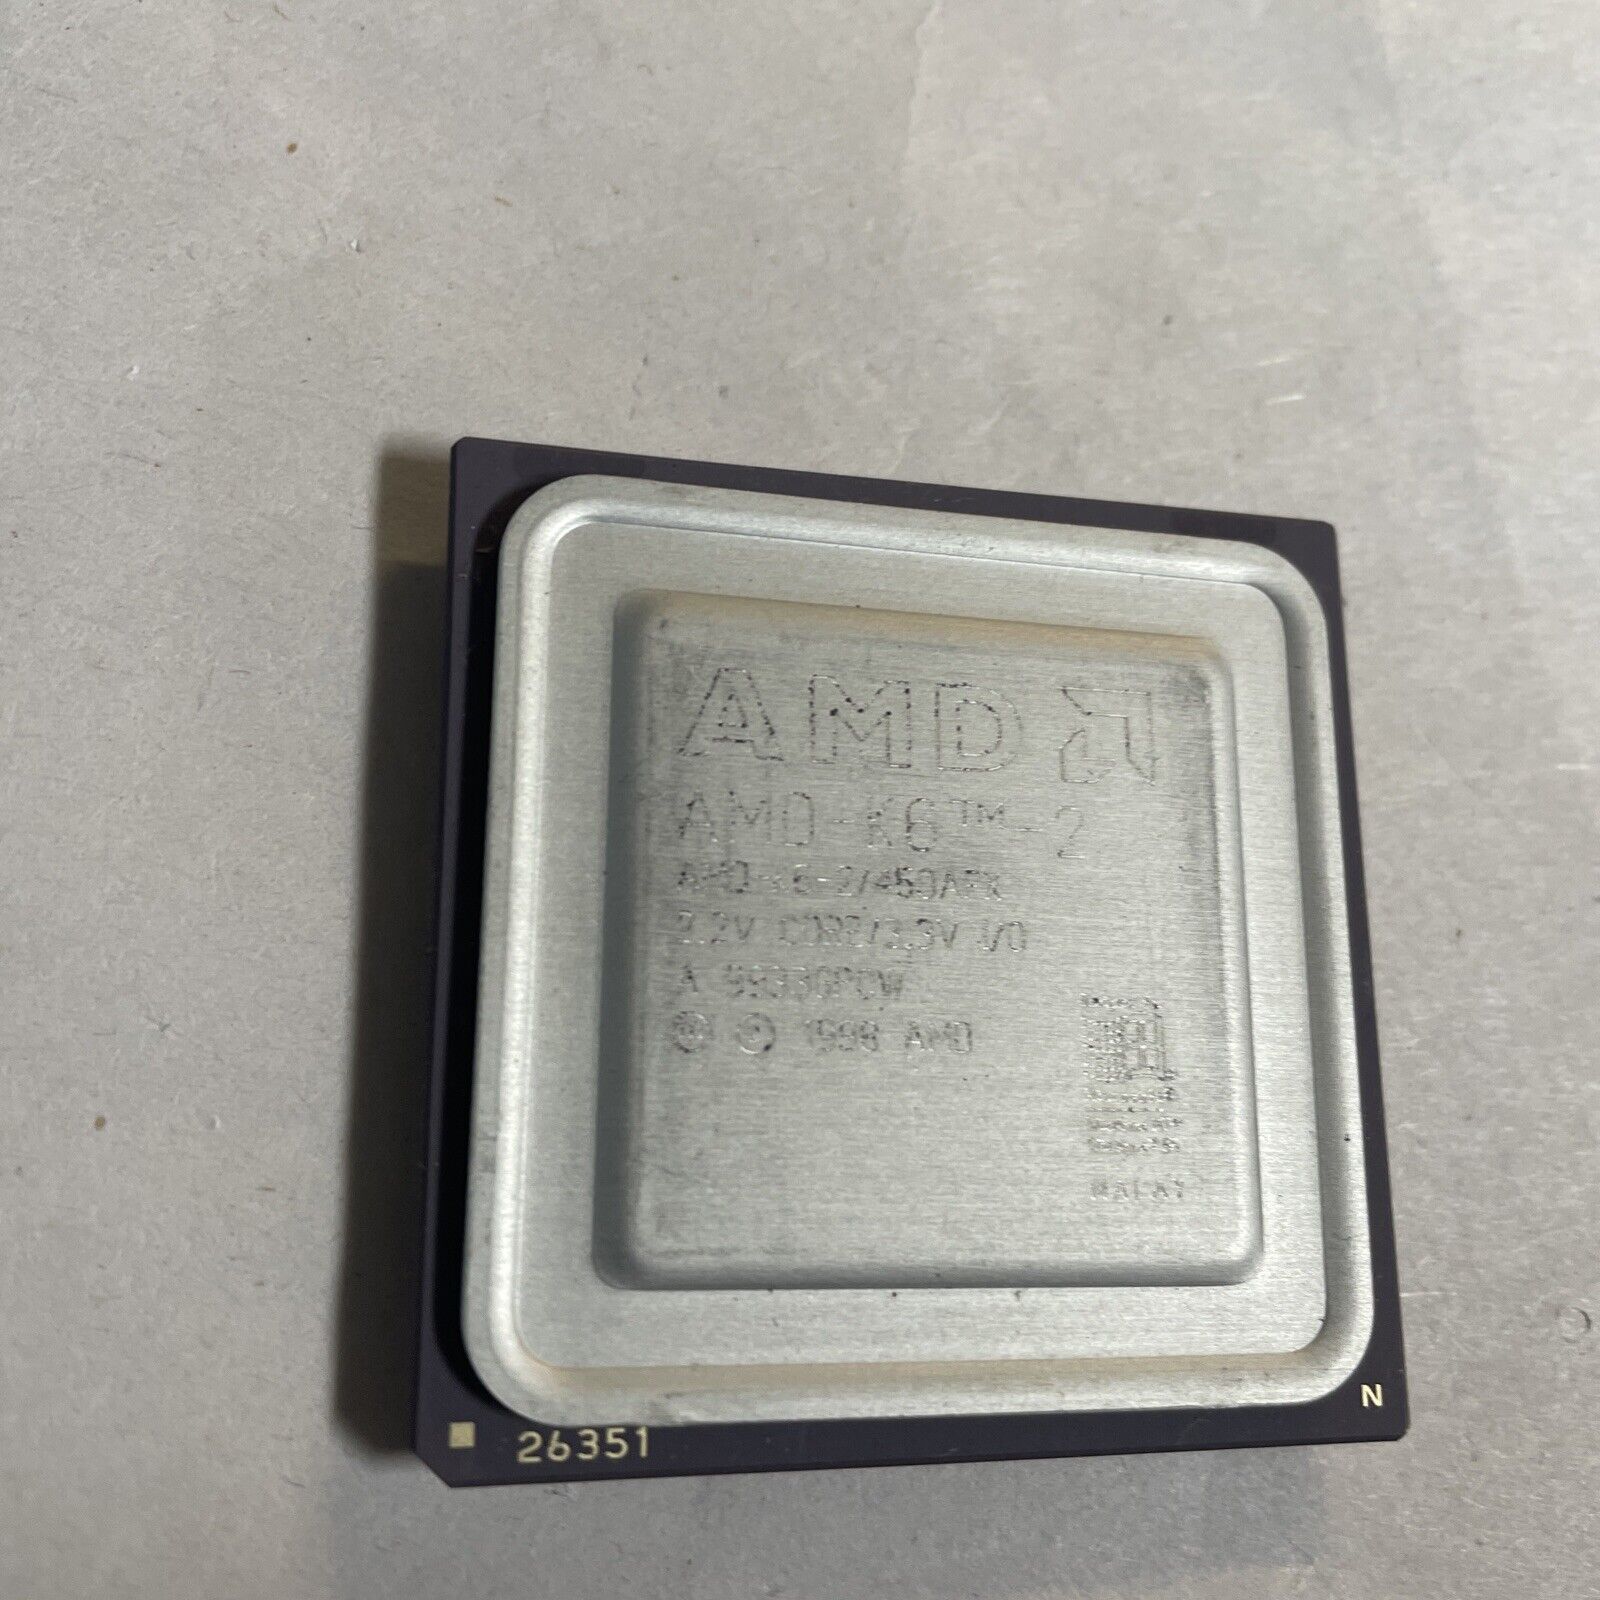 AMD K6-2 / 450AFX 450MHz  Socket Super 7 CPU Processor @CPUN